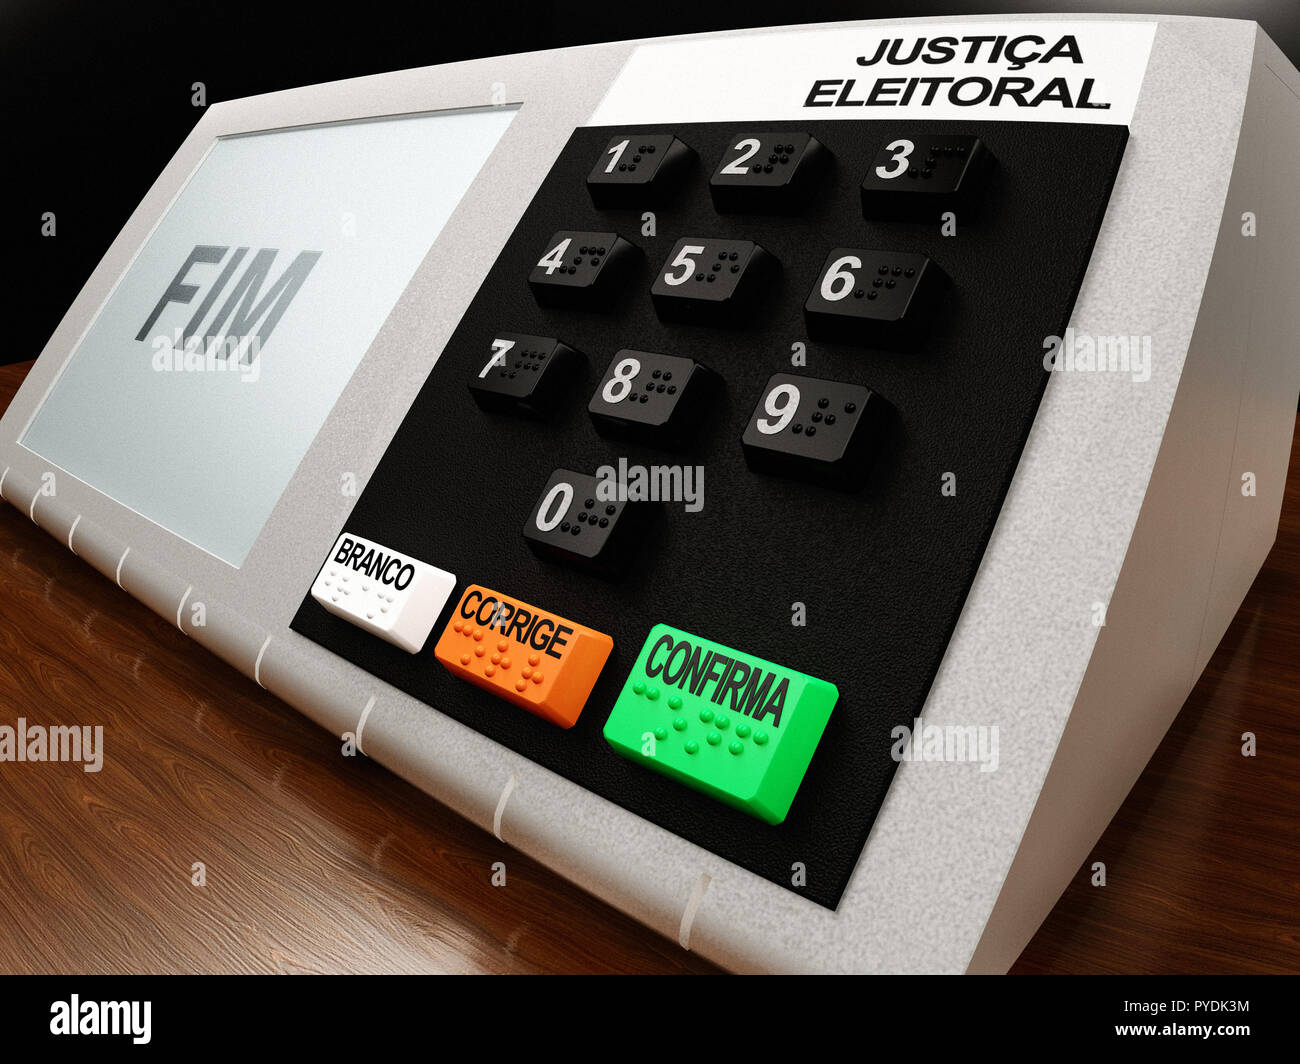 Brasilianische voting Machine (urna Eletronica) von 2018 Präsidentschaftswahlen in Brasilien, mit FIM (Ende) auf dem LCD-Display angezeigt. Stockfoto